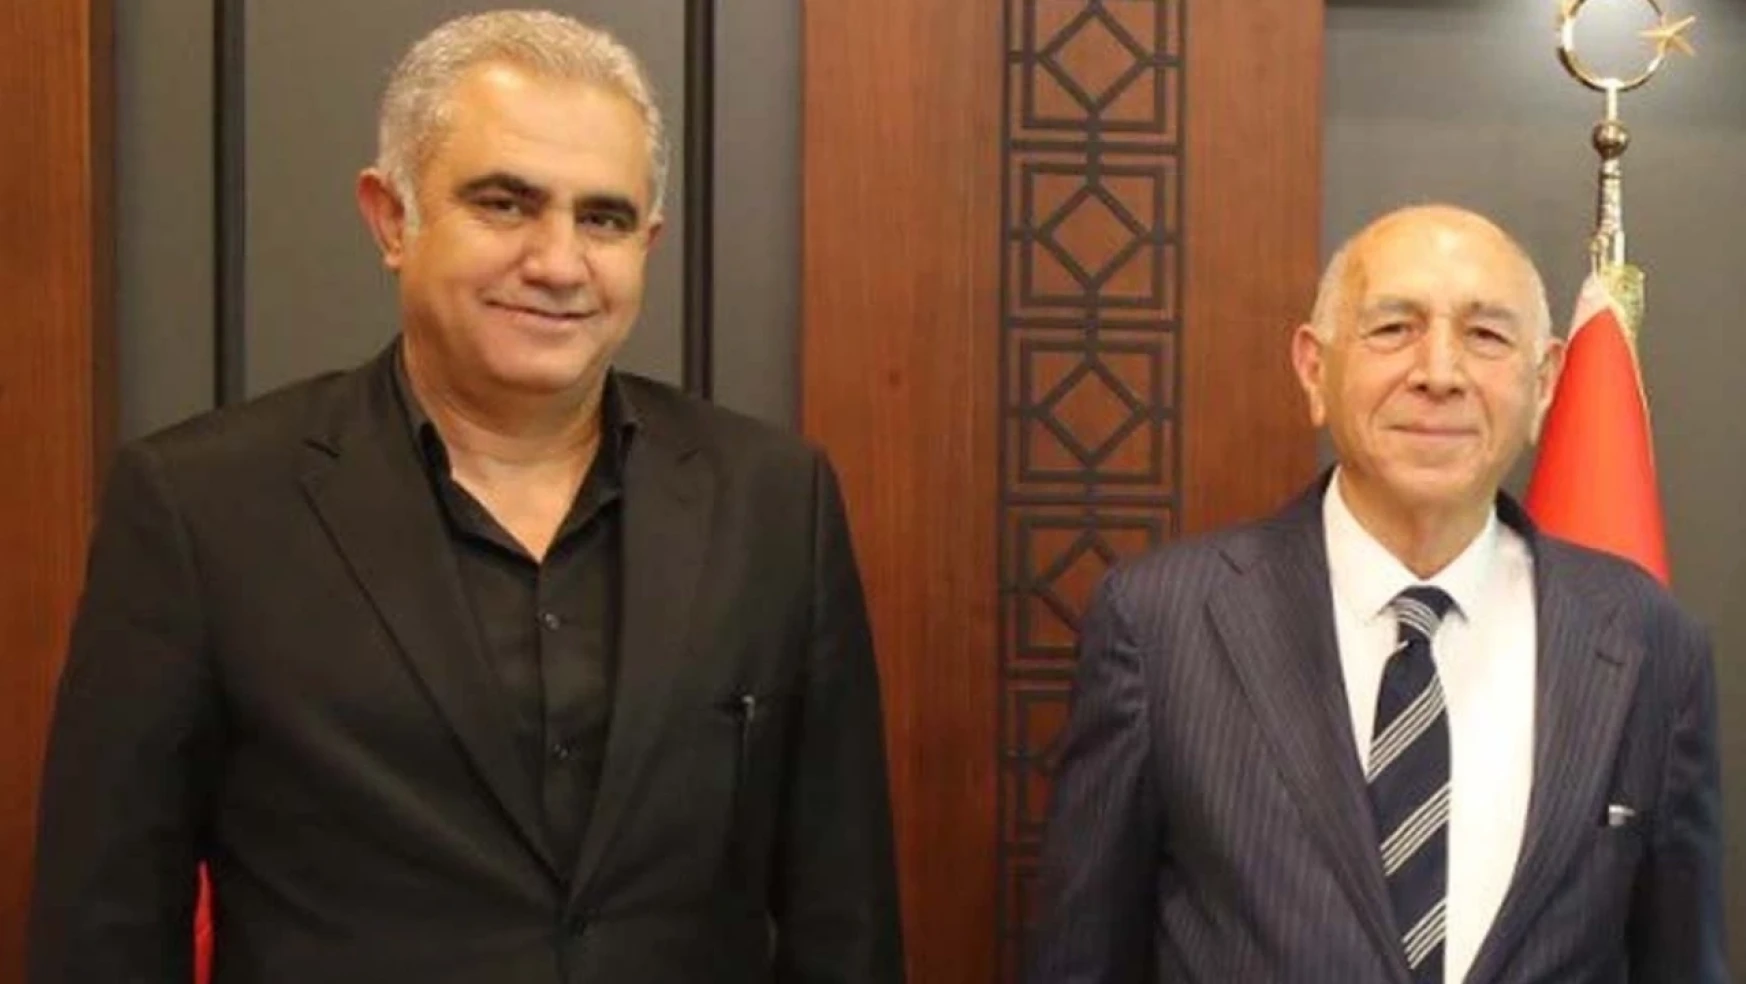 İnşaat Mühendisi Süleyman Oflas, Belediye Başkan adaylığını açıkladı